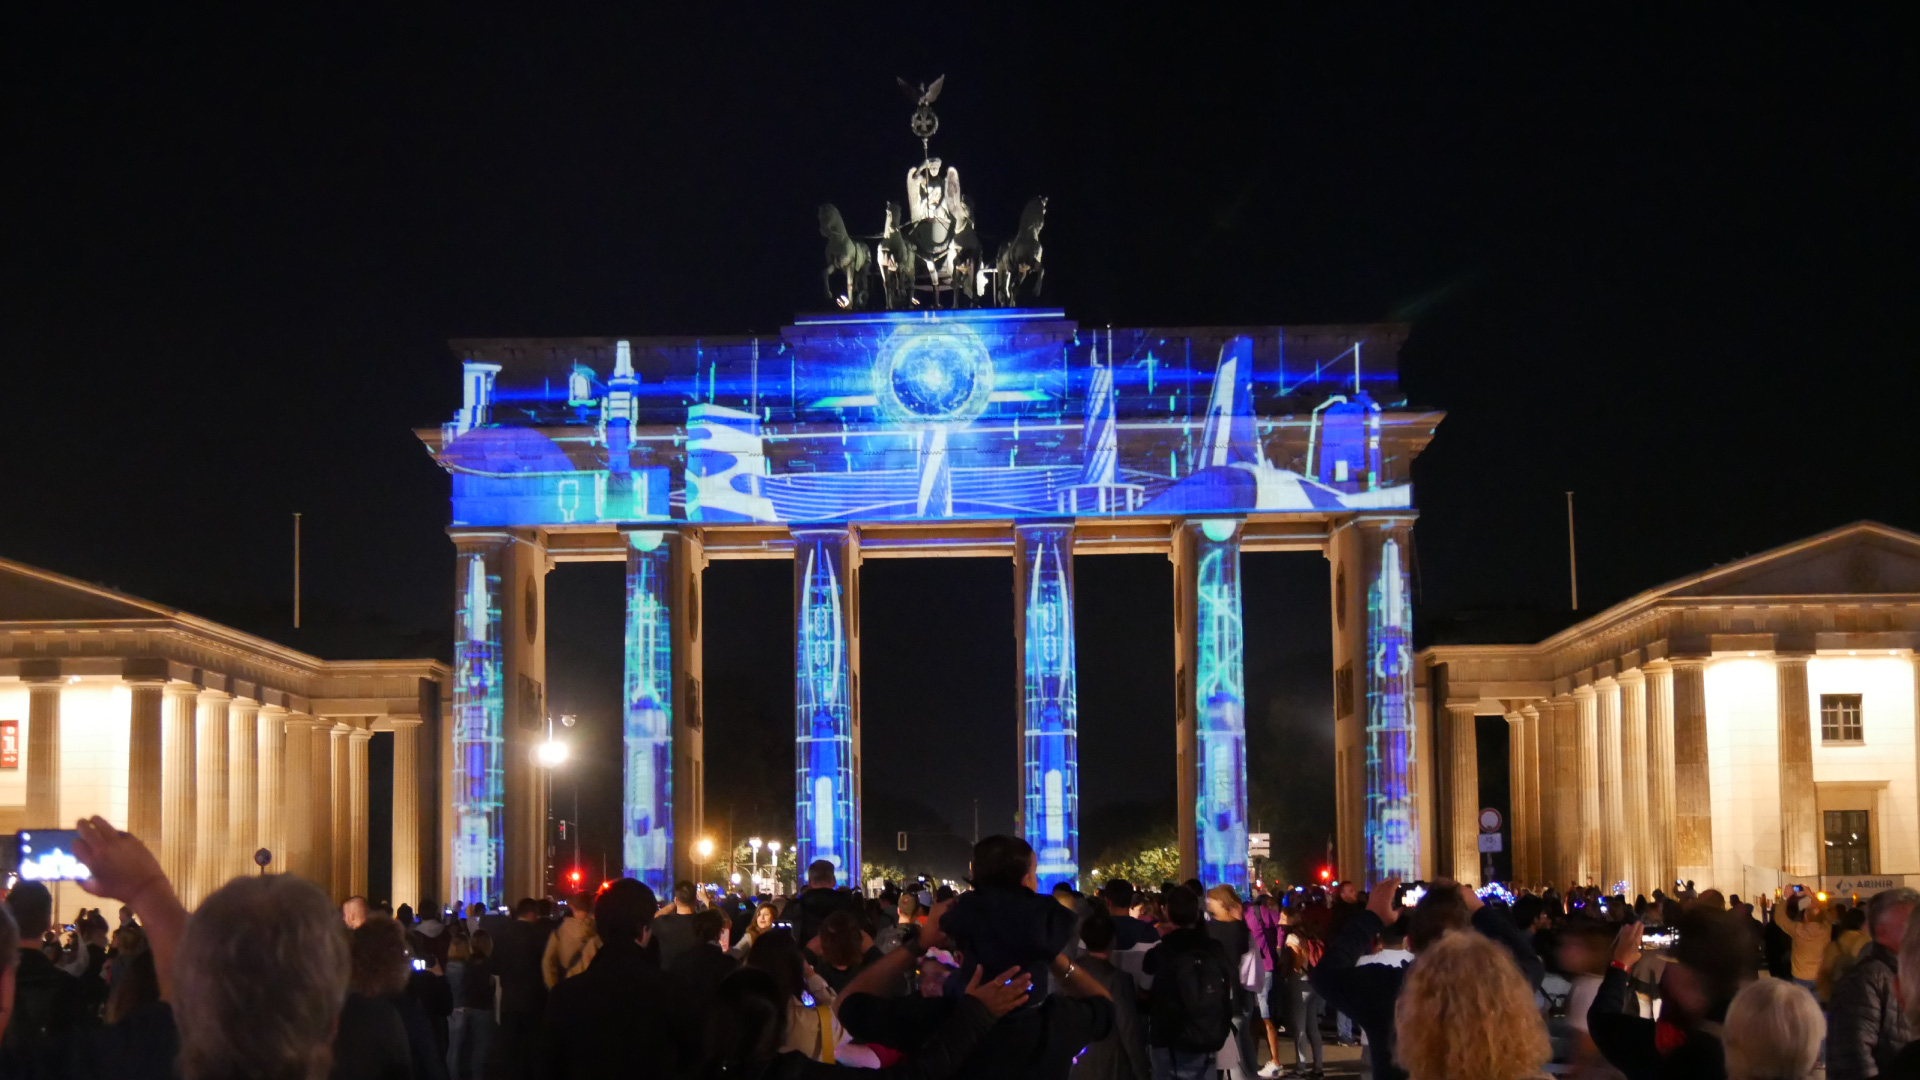 PRG leverde meer dan 20 projectoren voor de realisatie van deze verlichtingen tijdens het Festival of Lights in Berlijn op verschillende locaties.